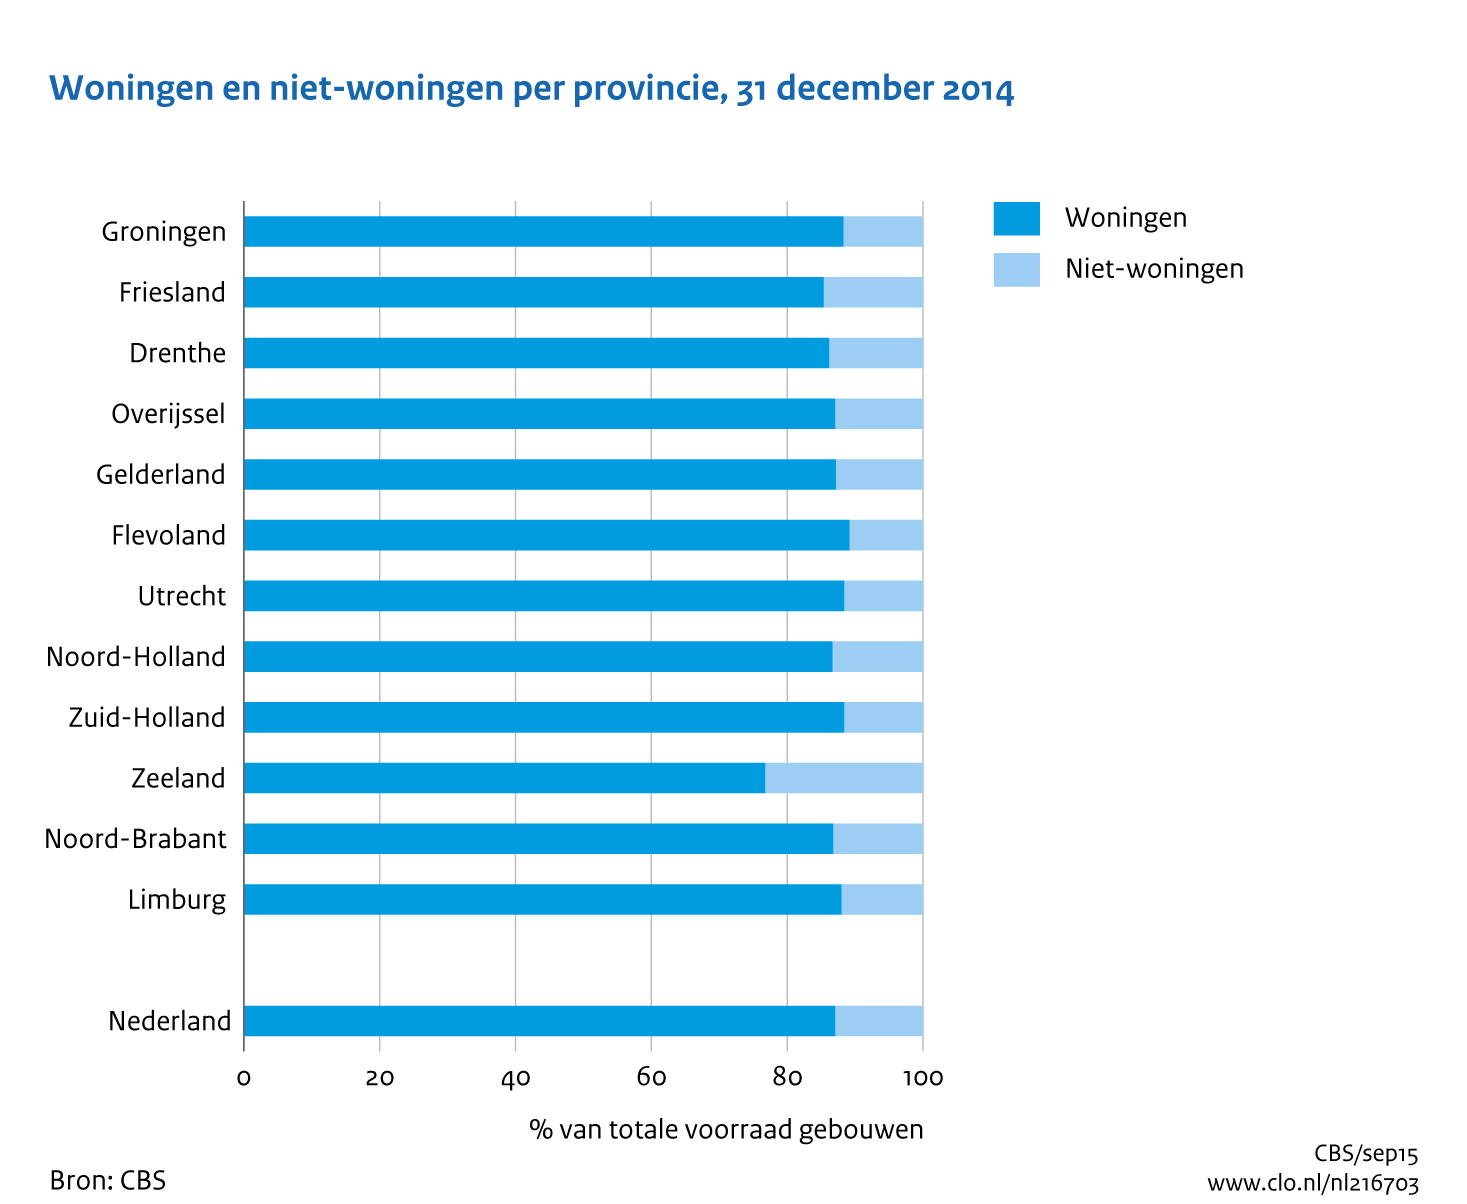 Figuur  Woningen en niet-woningen per provincie, 31 december 2014. In de rest van de tekst wordt deze figuur uitgebreider uitgelegd.